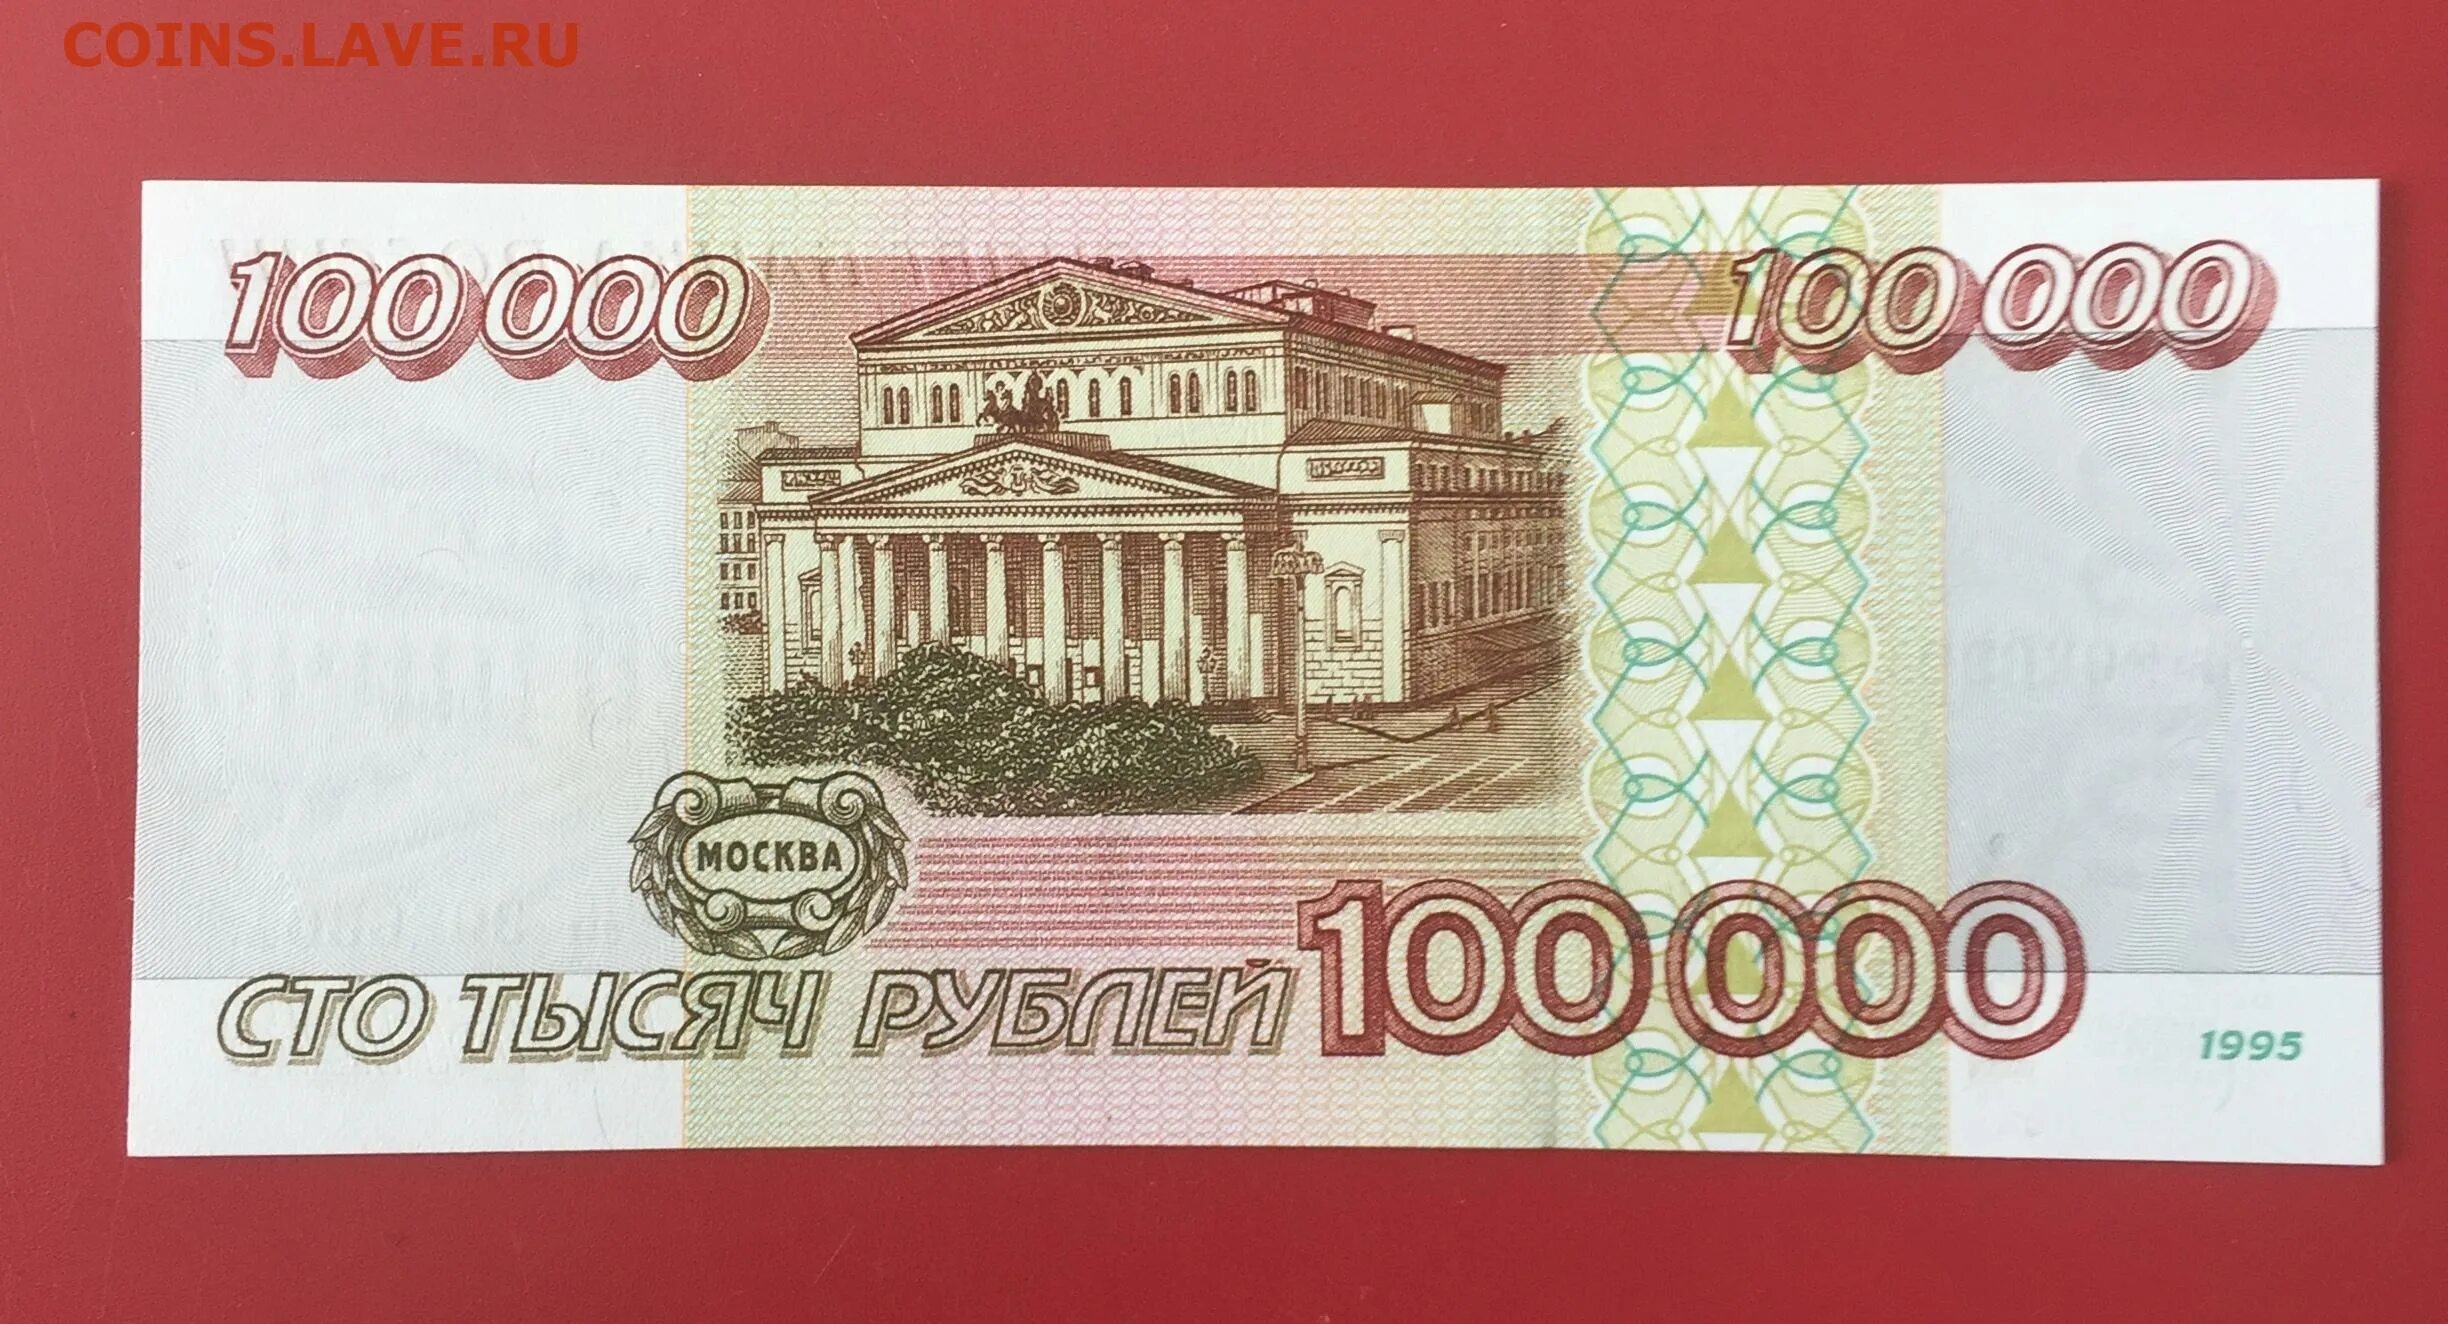 10 000 Рублей. 100000 Рублей в 1998 году. Ноль рублей. Рубль России. 70000 российских рублей в белорусских рублях